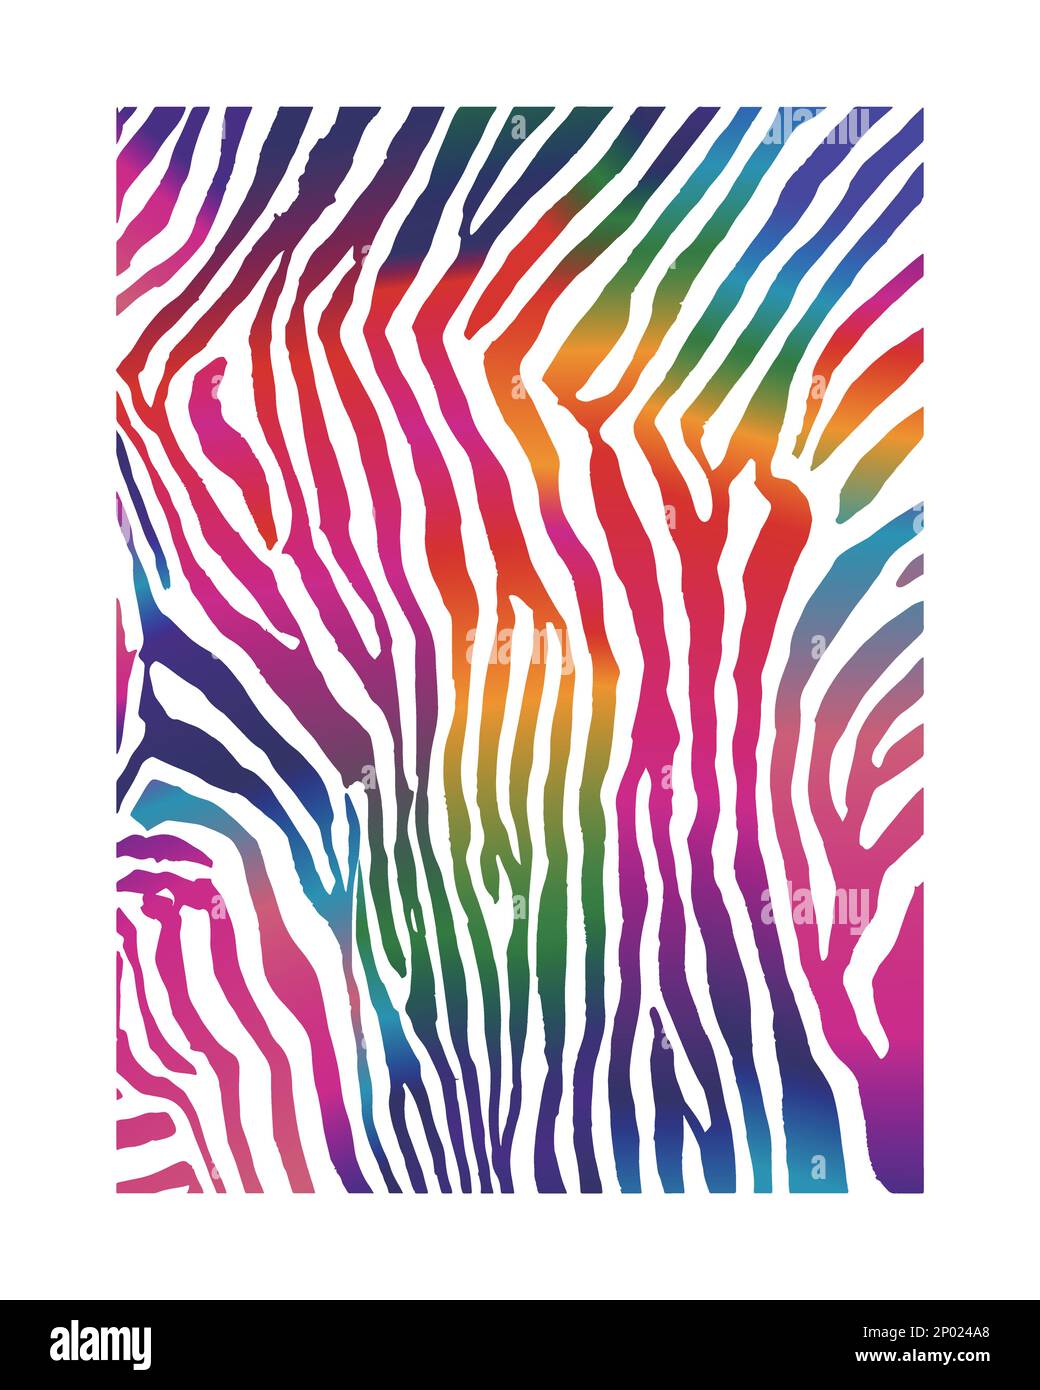 Stampa vettoriale minimalista iridescente Zebra Pattern per poster, copertina del libro o sfondo pubblicitario. Illustrazione Vettoriale